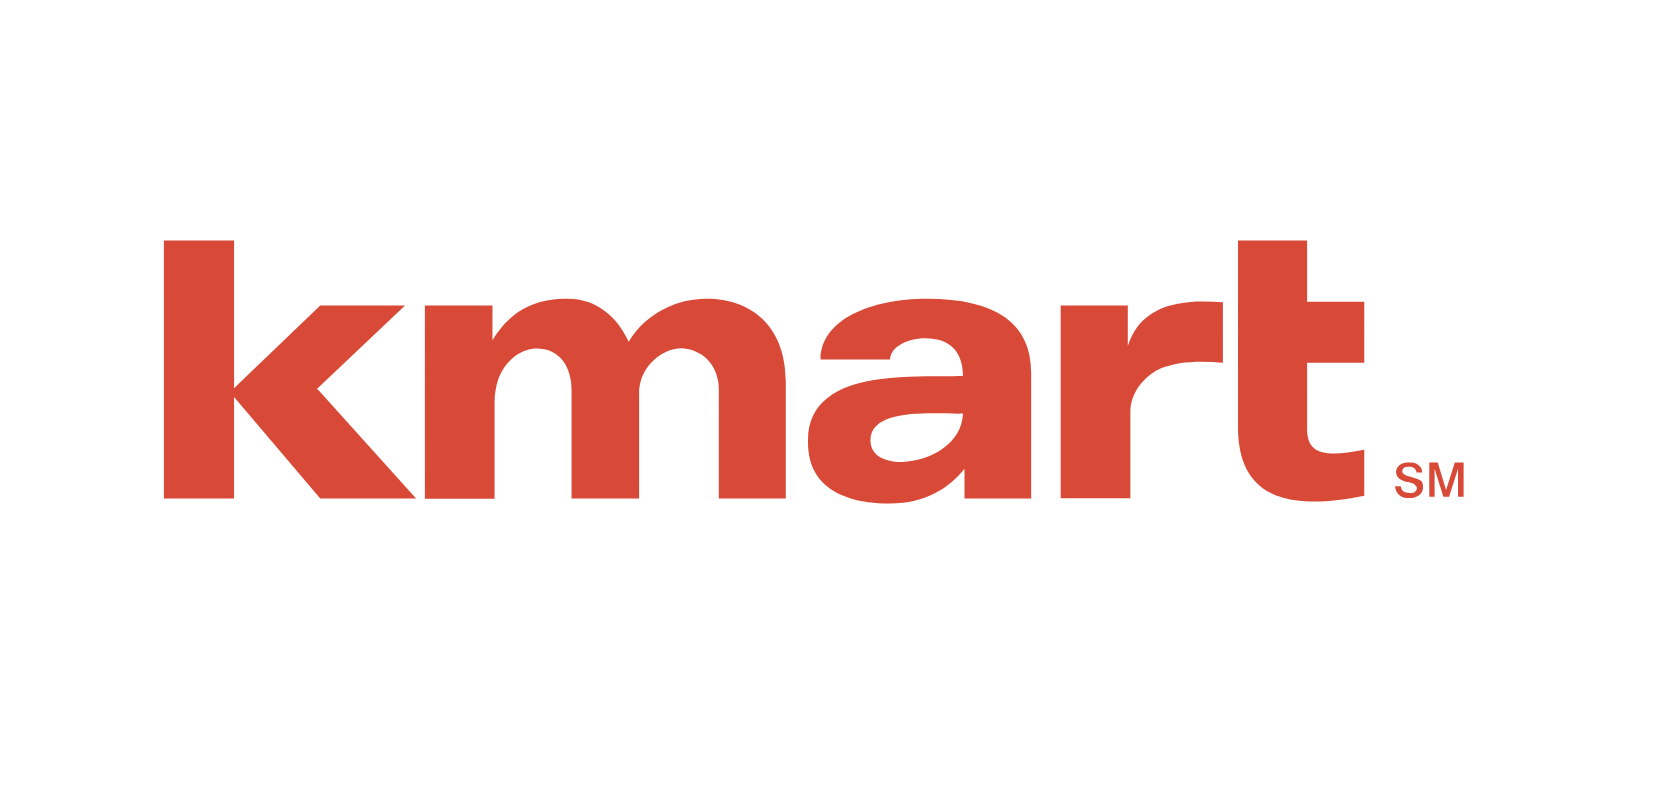 Old Kmart Logo - Hardware store slated for former Kmart